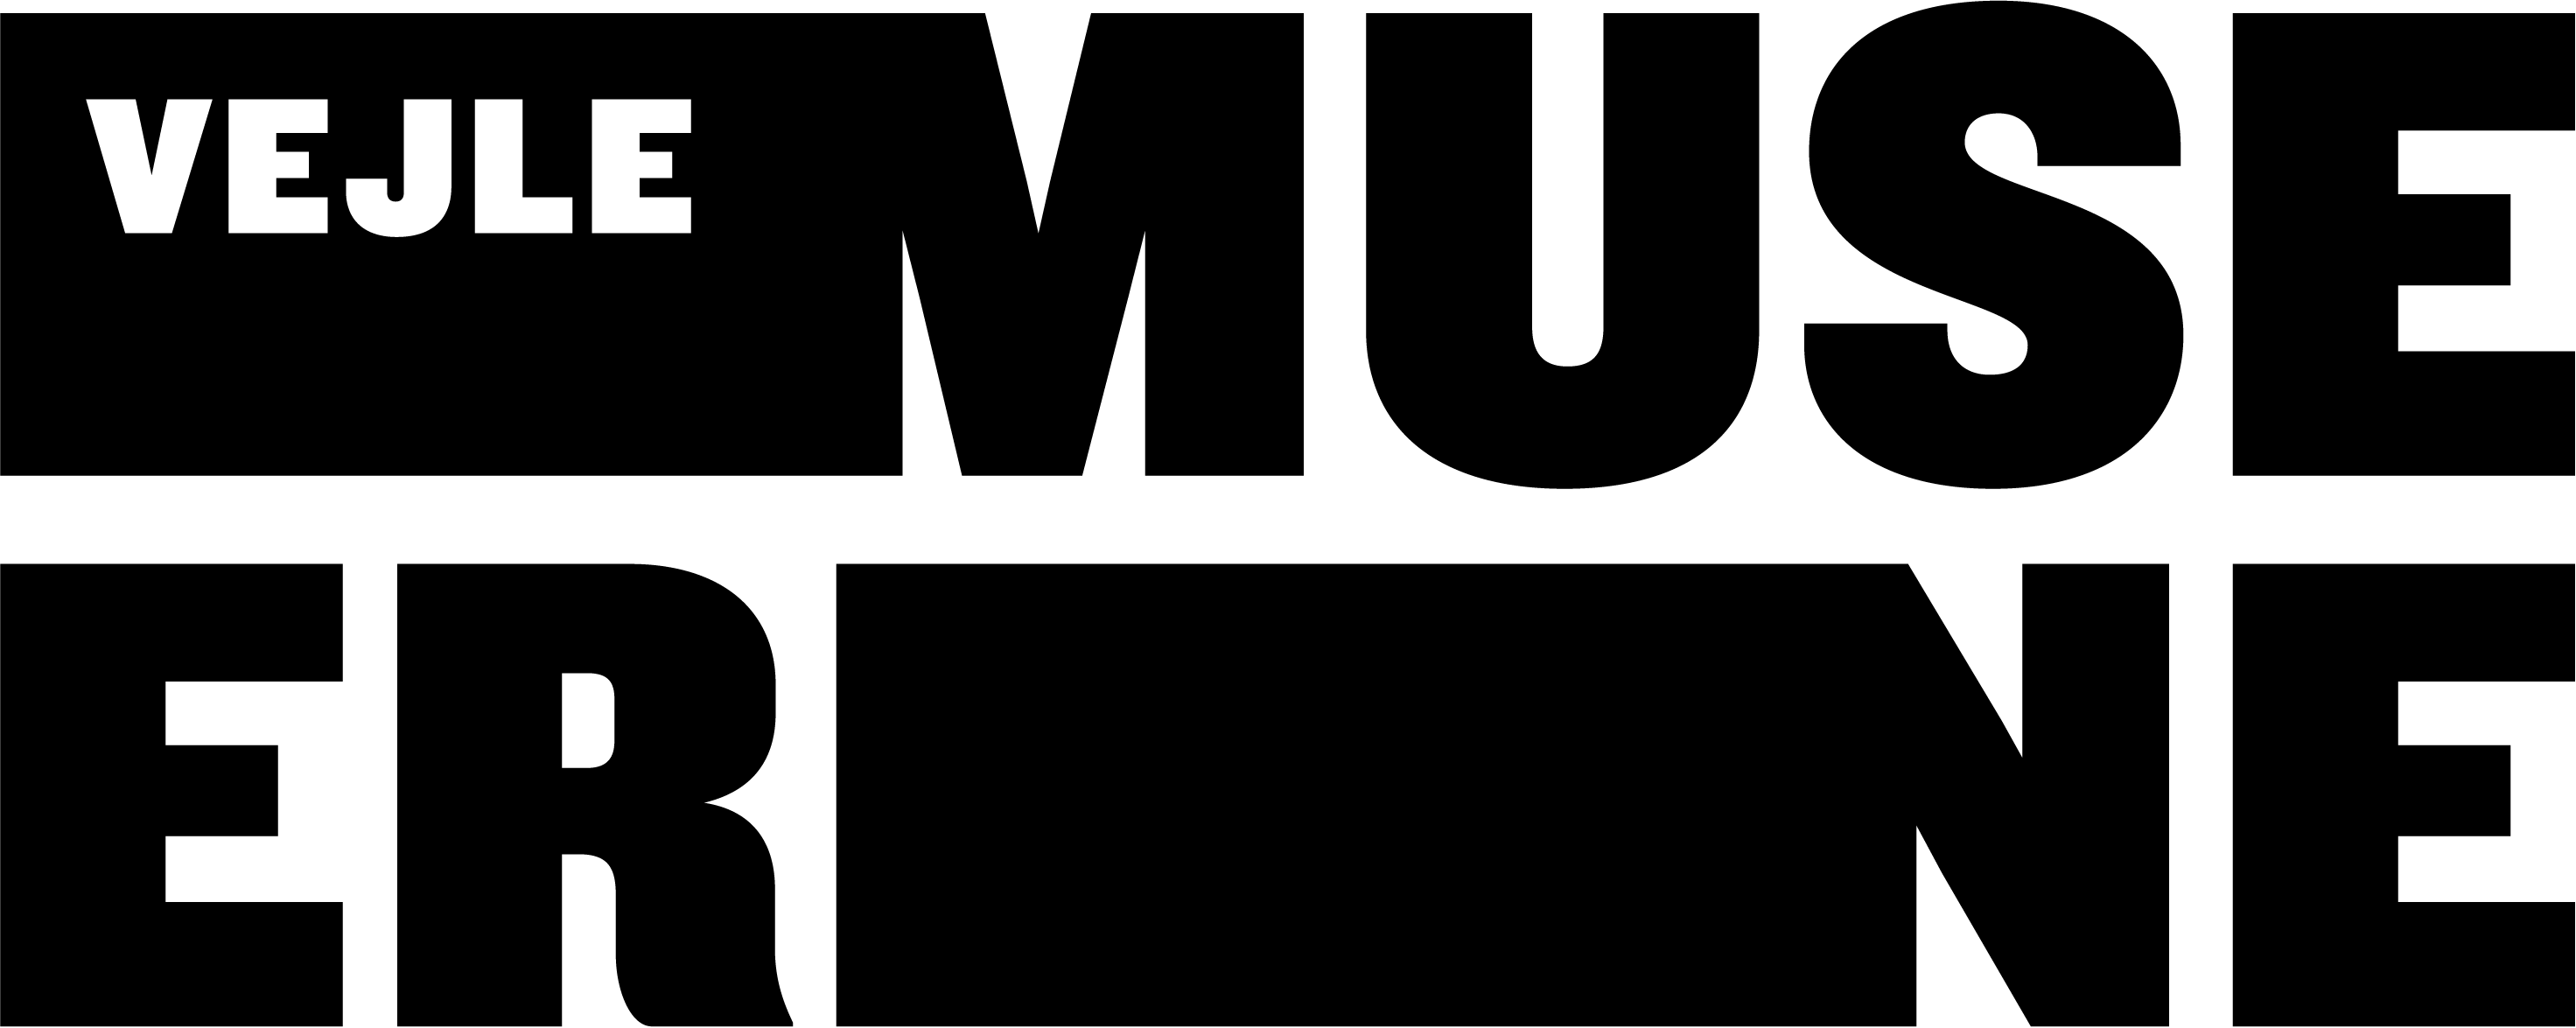 VejleMuseerne Logotype 2 linjer sort